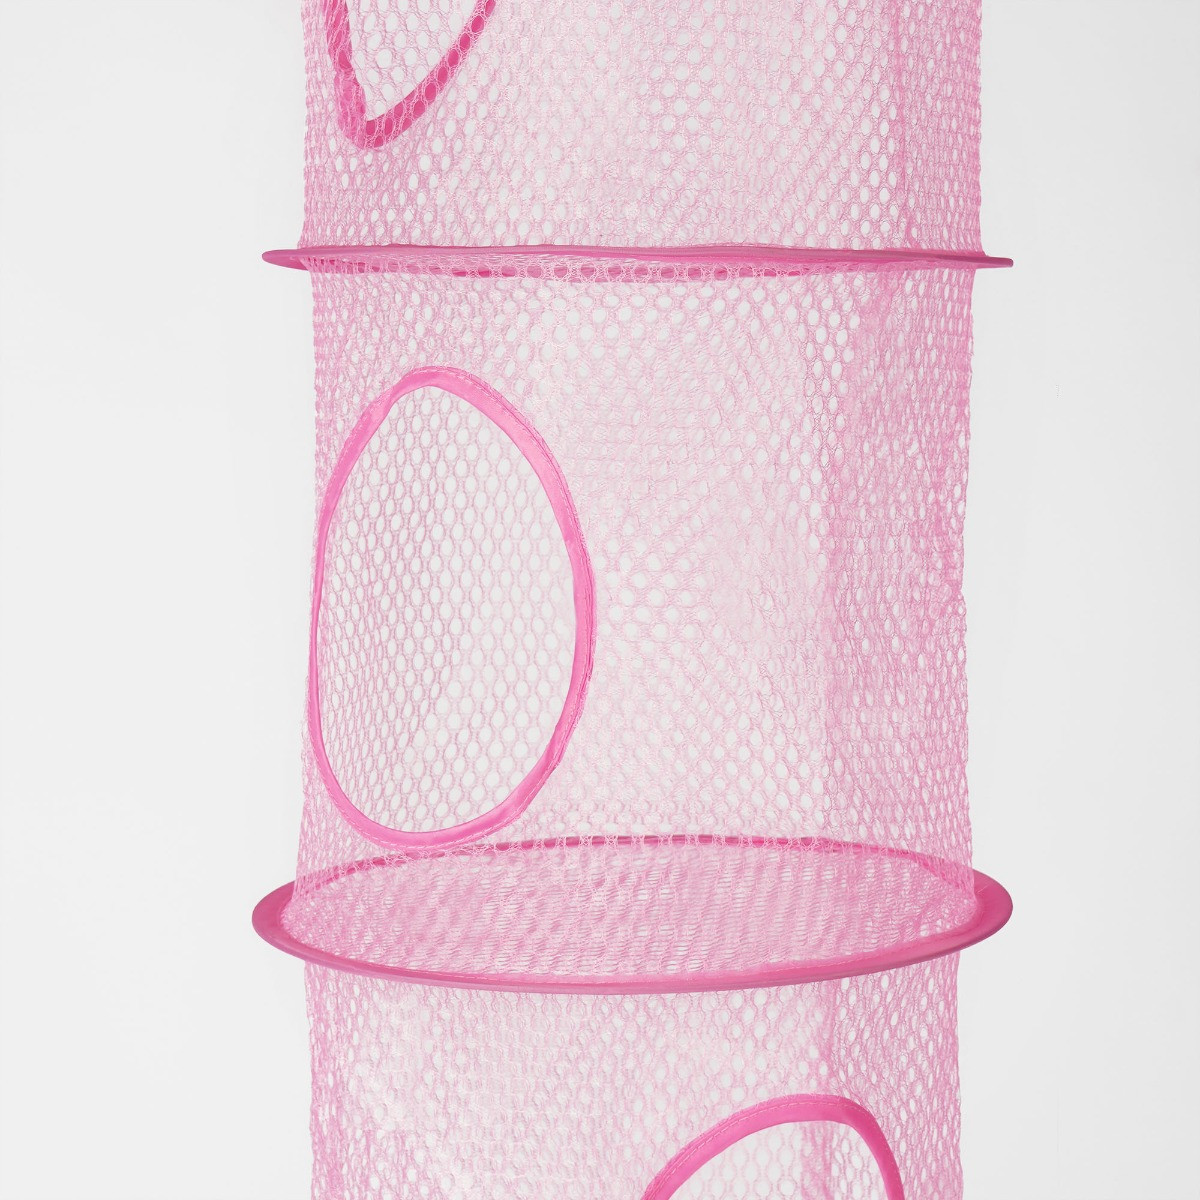 OHS Kids Toys Storage Hanging Net Basket - Blush>